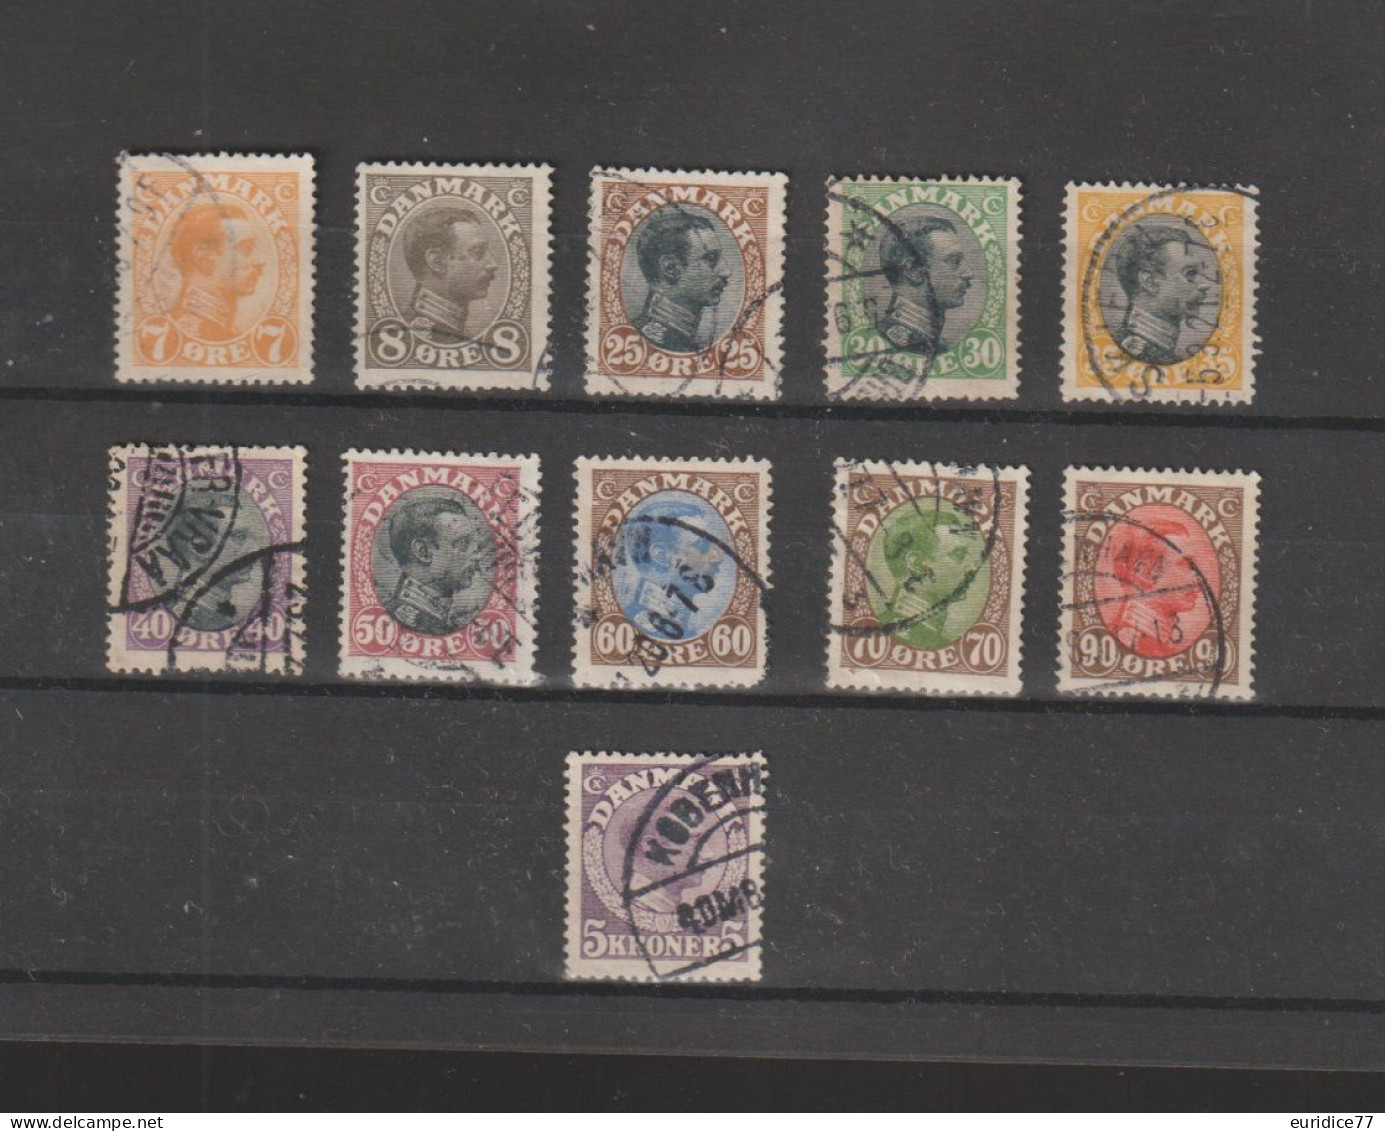 Danemark Denmark 1919 - Yvert 105/116 Obliterée VC 65€ - Used Stamps